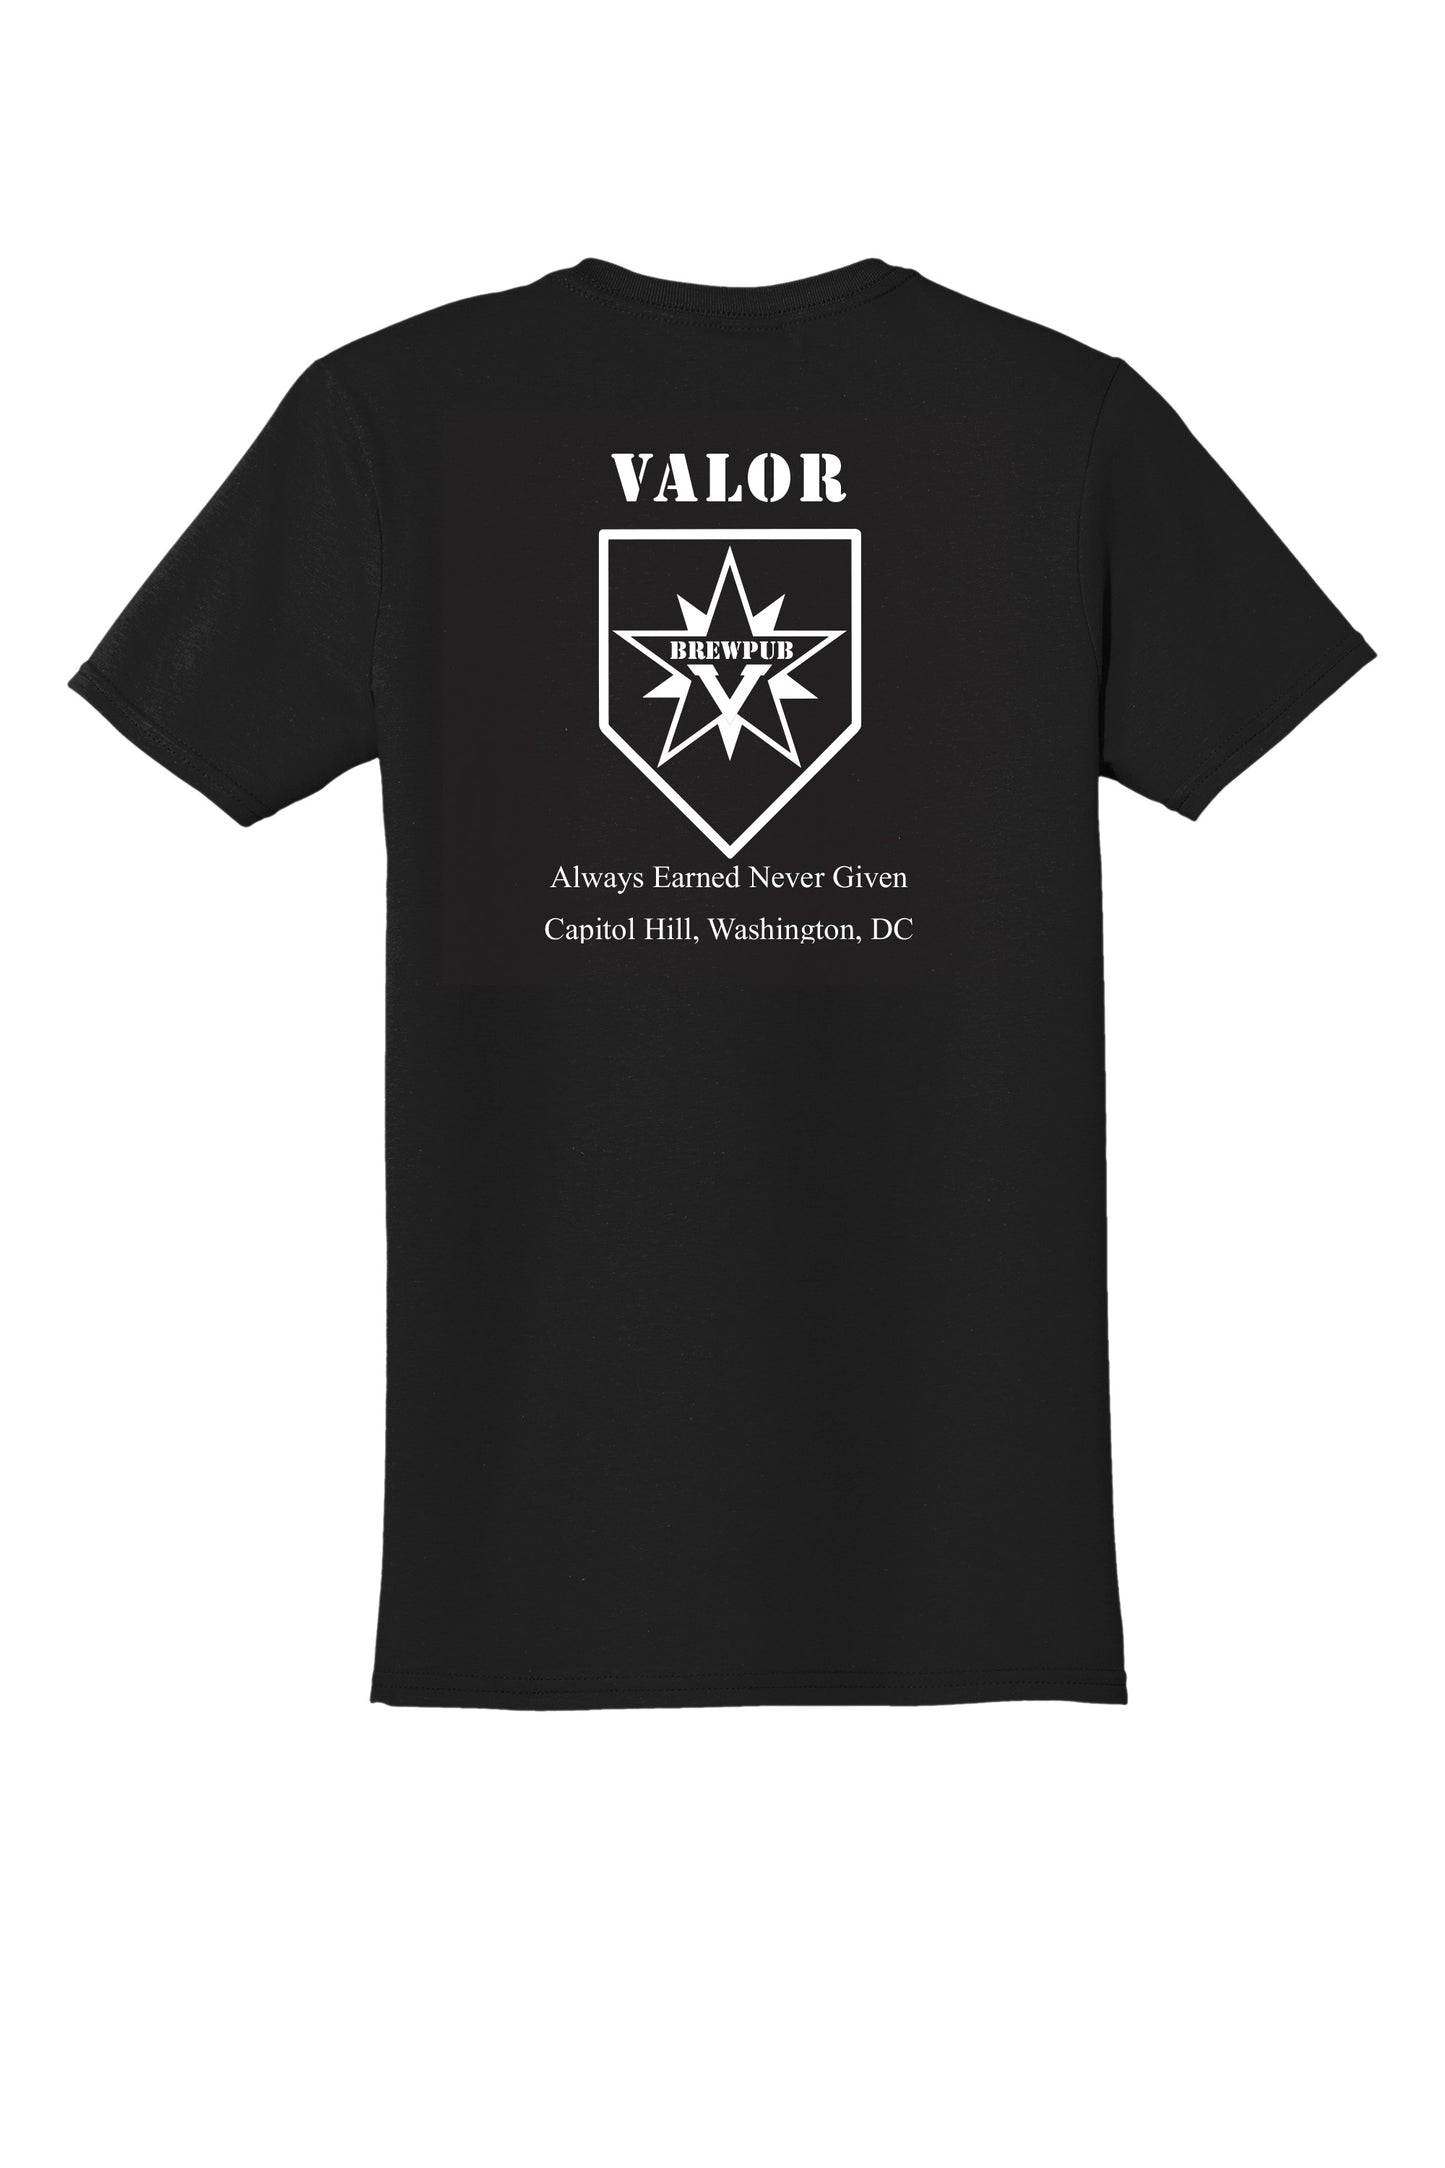 Unisex Soft Style T-Shirt - Valor